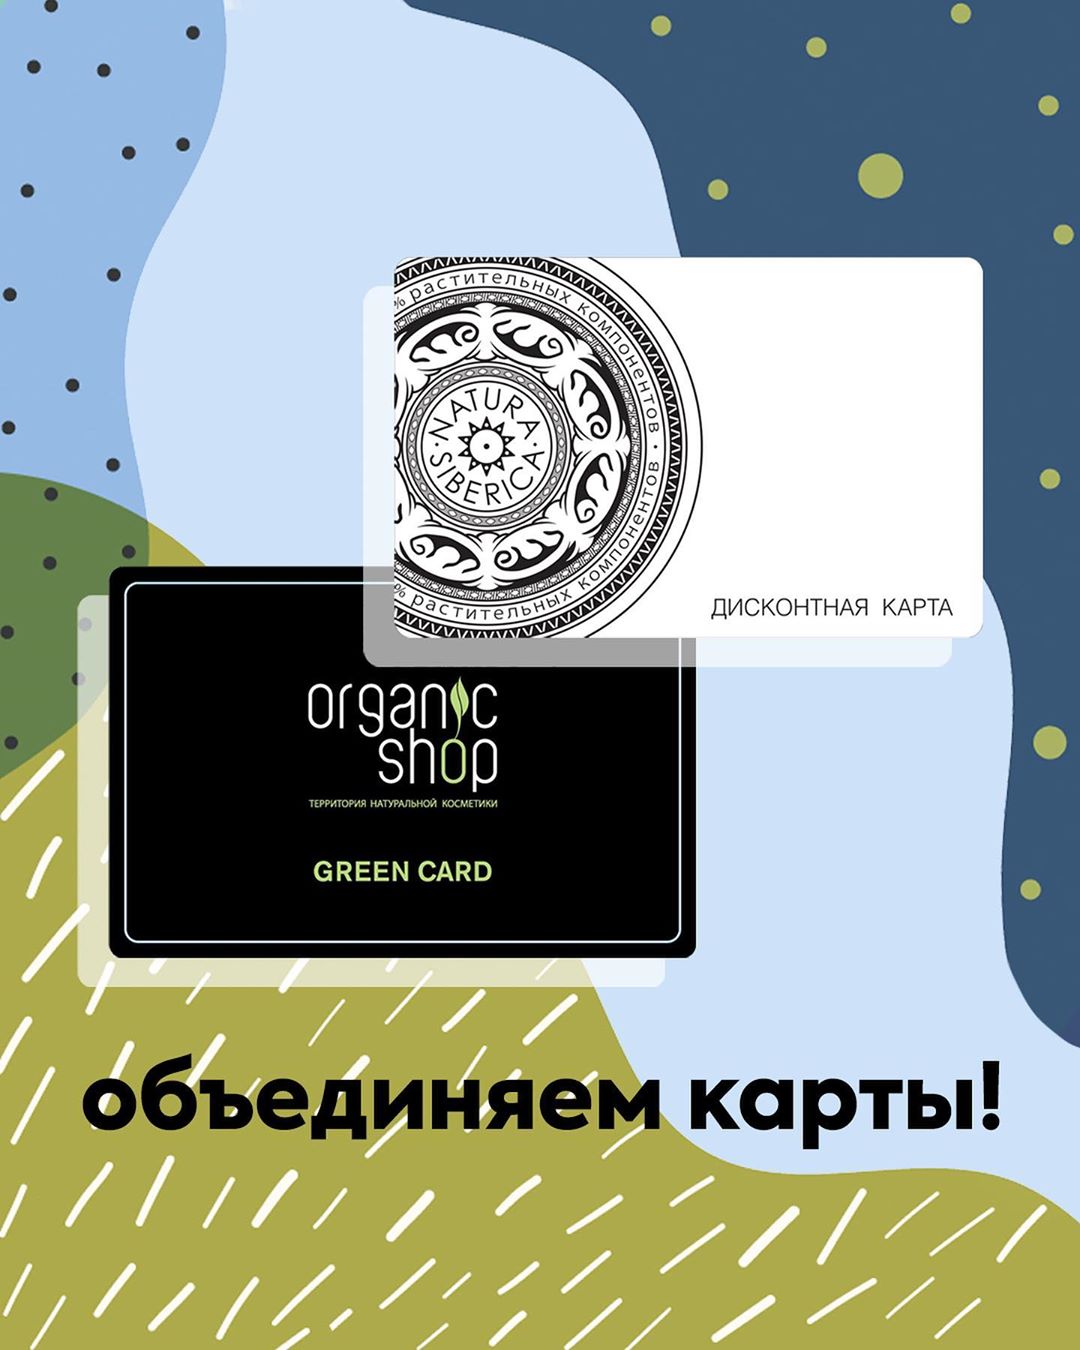 Organic Shop 🌿 Official Page - Теперь мы принимаем дисконтные карты Natura Siberica в магазинах Organic Shop и наоборот (вы можете воспользоваться картой Organic Shop в магазинах Natura Siberica)! Ур...